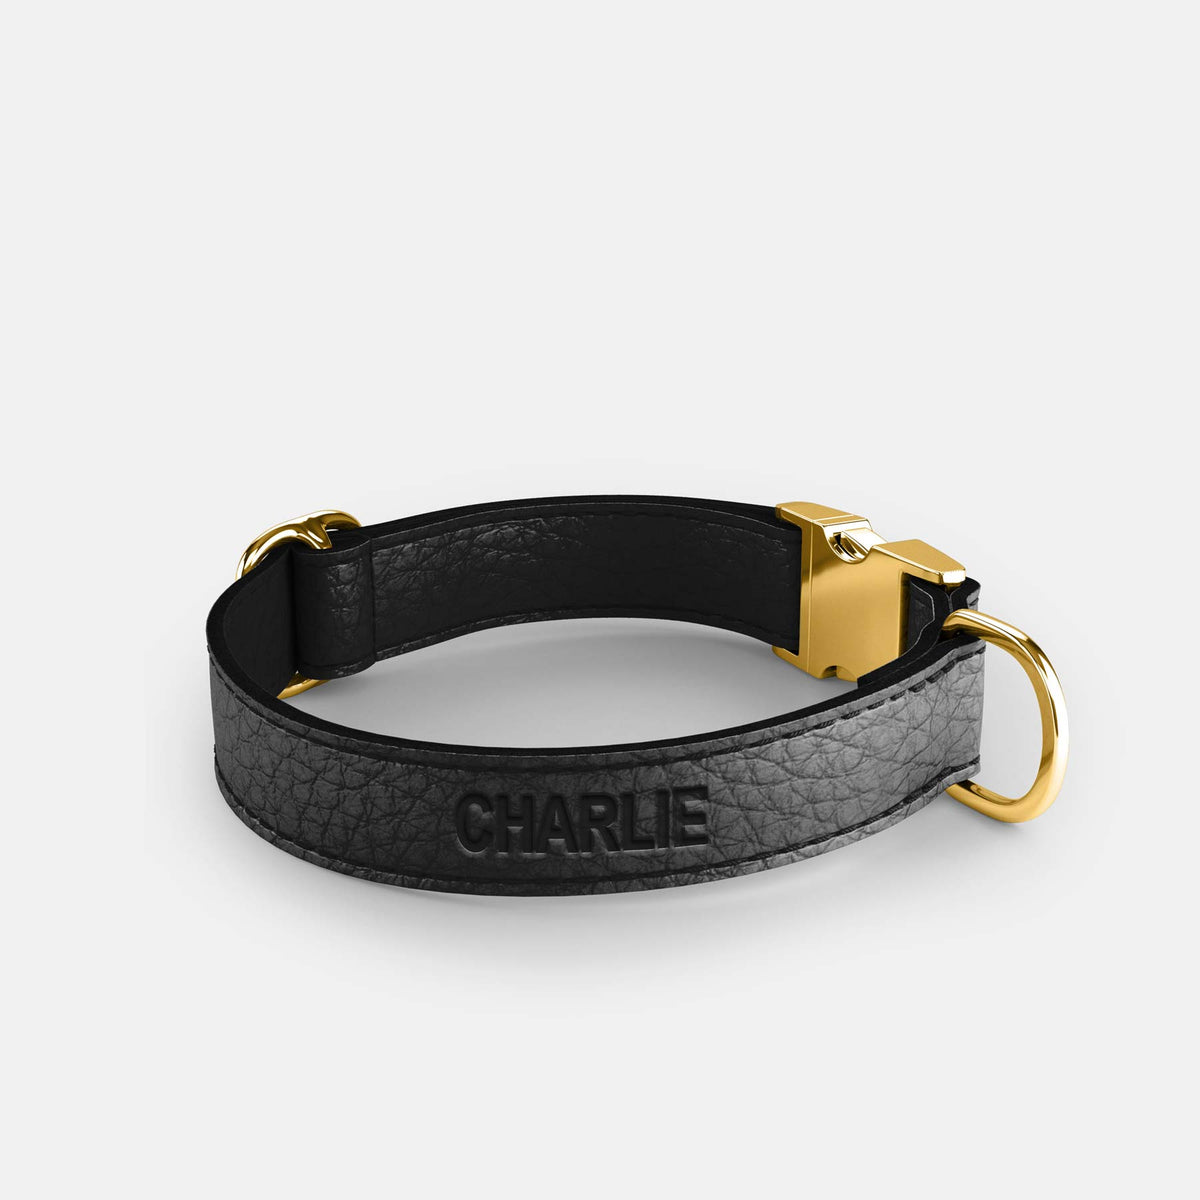 Leather Dog Collar - Black - RYAN London